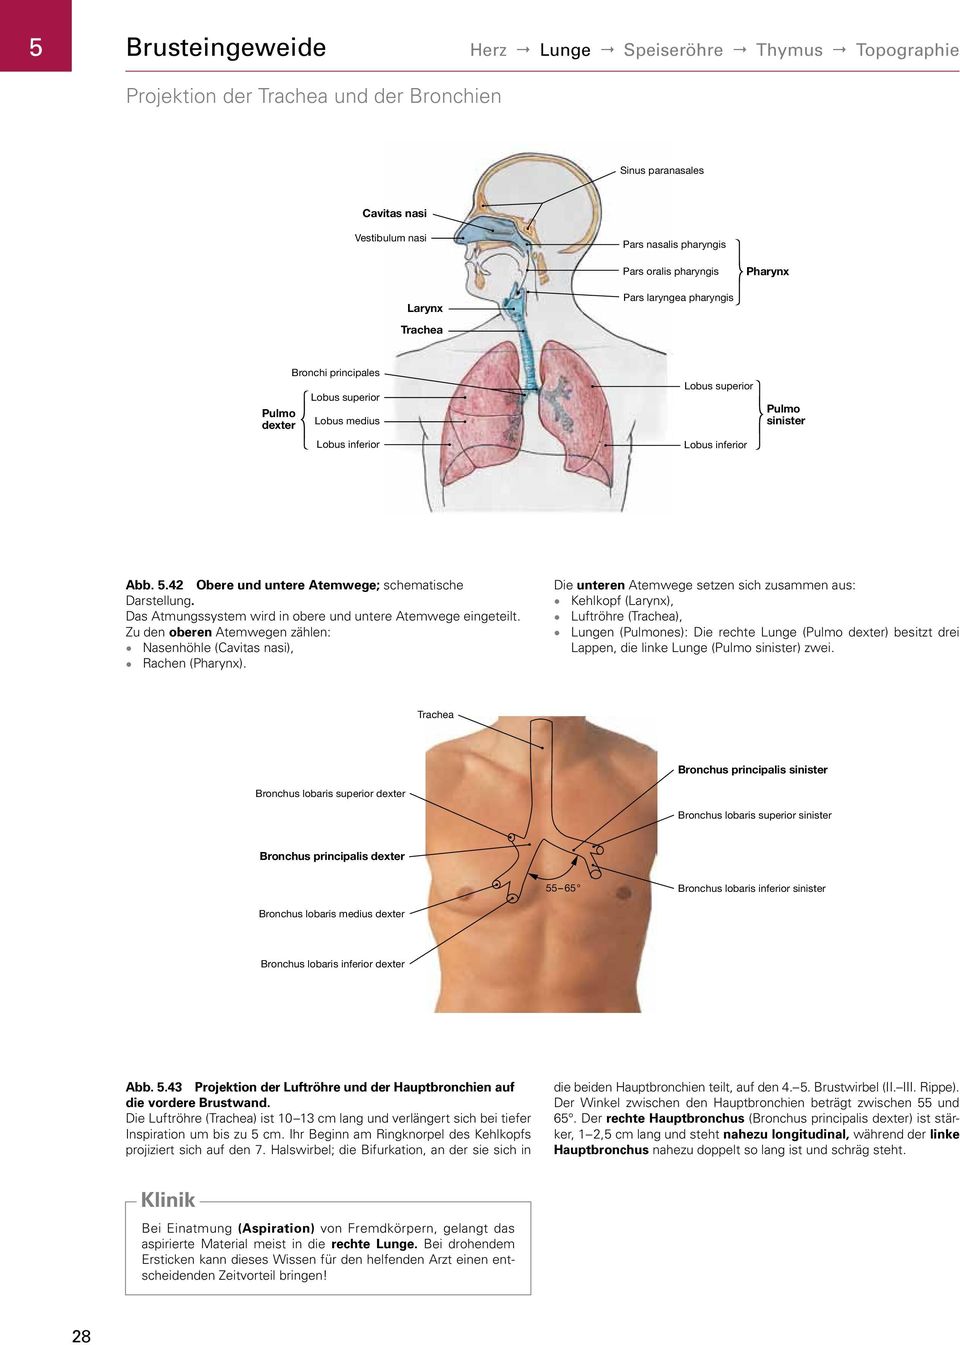 42 Obere und untere Atemwege; schematische Darstellung. Das Atmungssystem wird in obere und untere Atemwege eingeteilt. Zu den oberen Atemwegen zählen: Nasenhöhle (Cavitas nasi), Rachen (Pharynx).